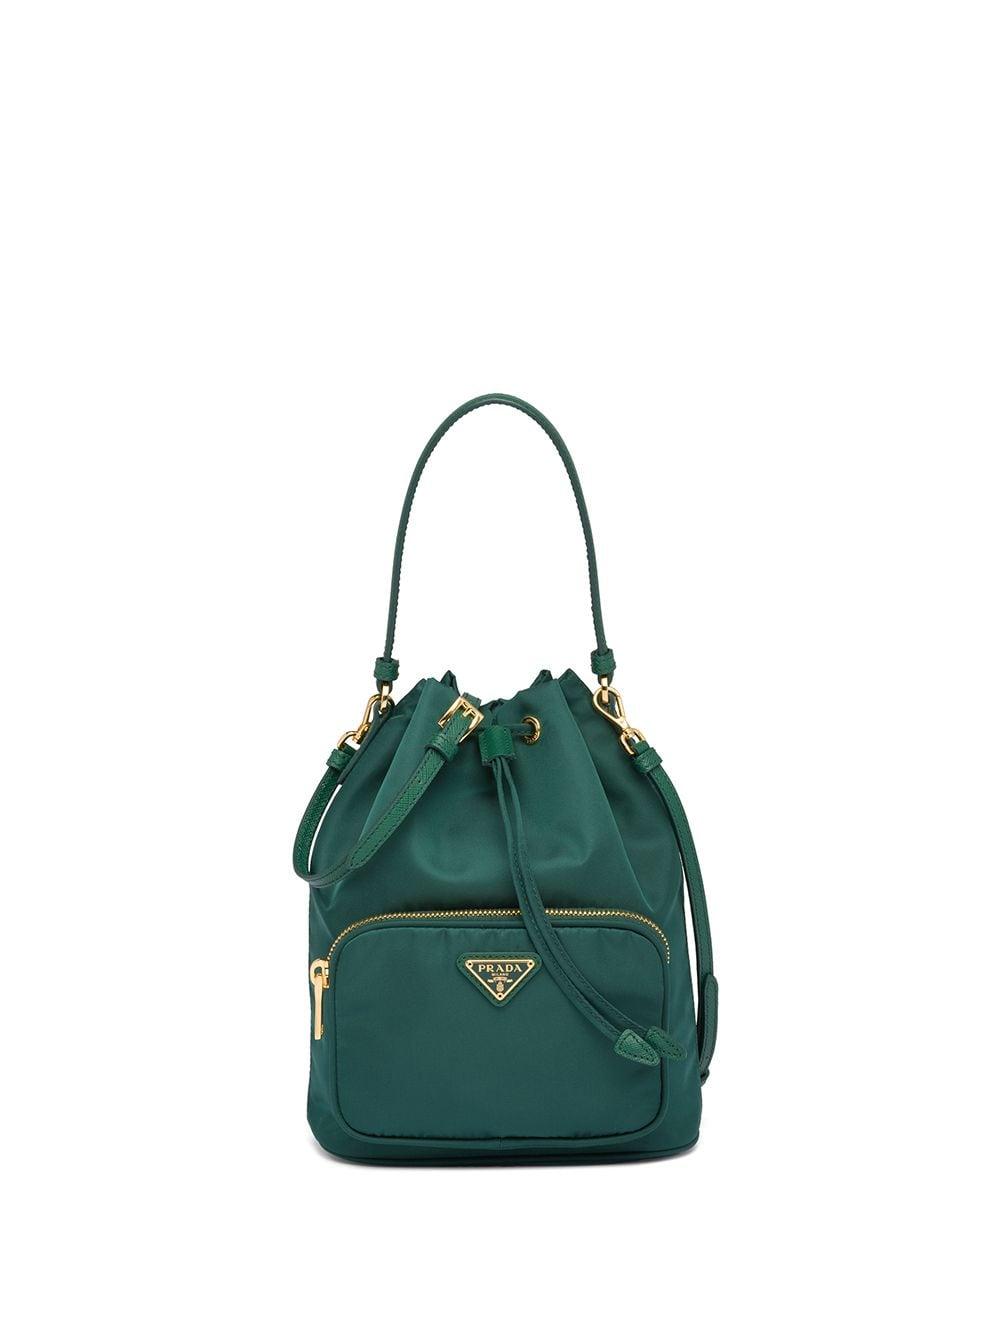 Prada Duet Bucket Bag in Green | Lyst